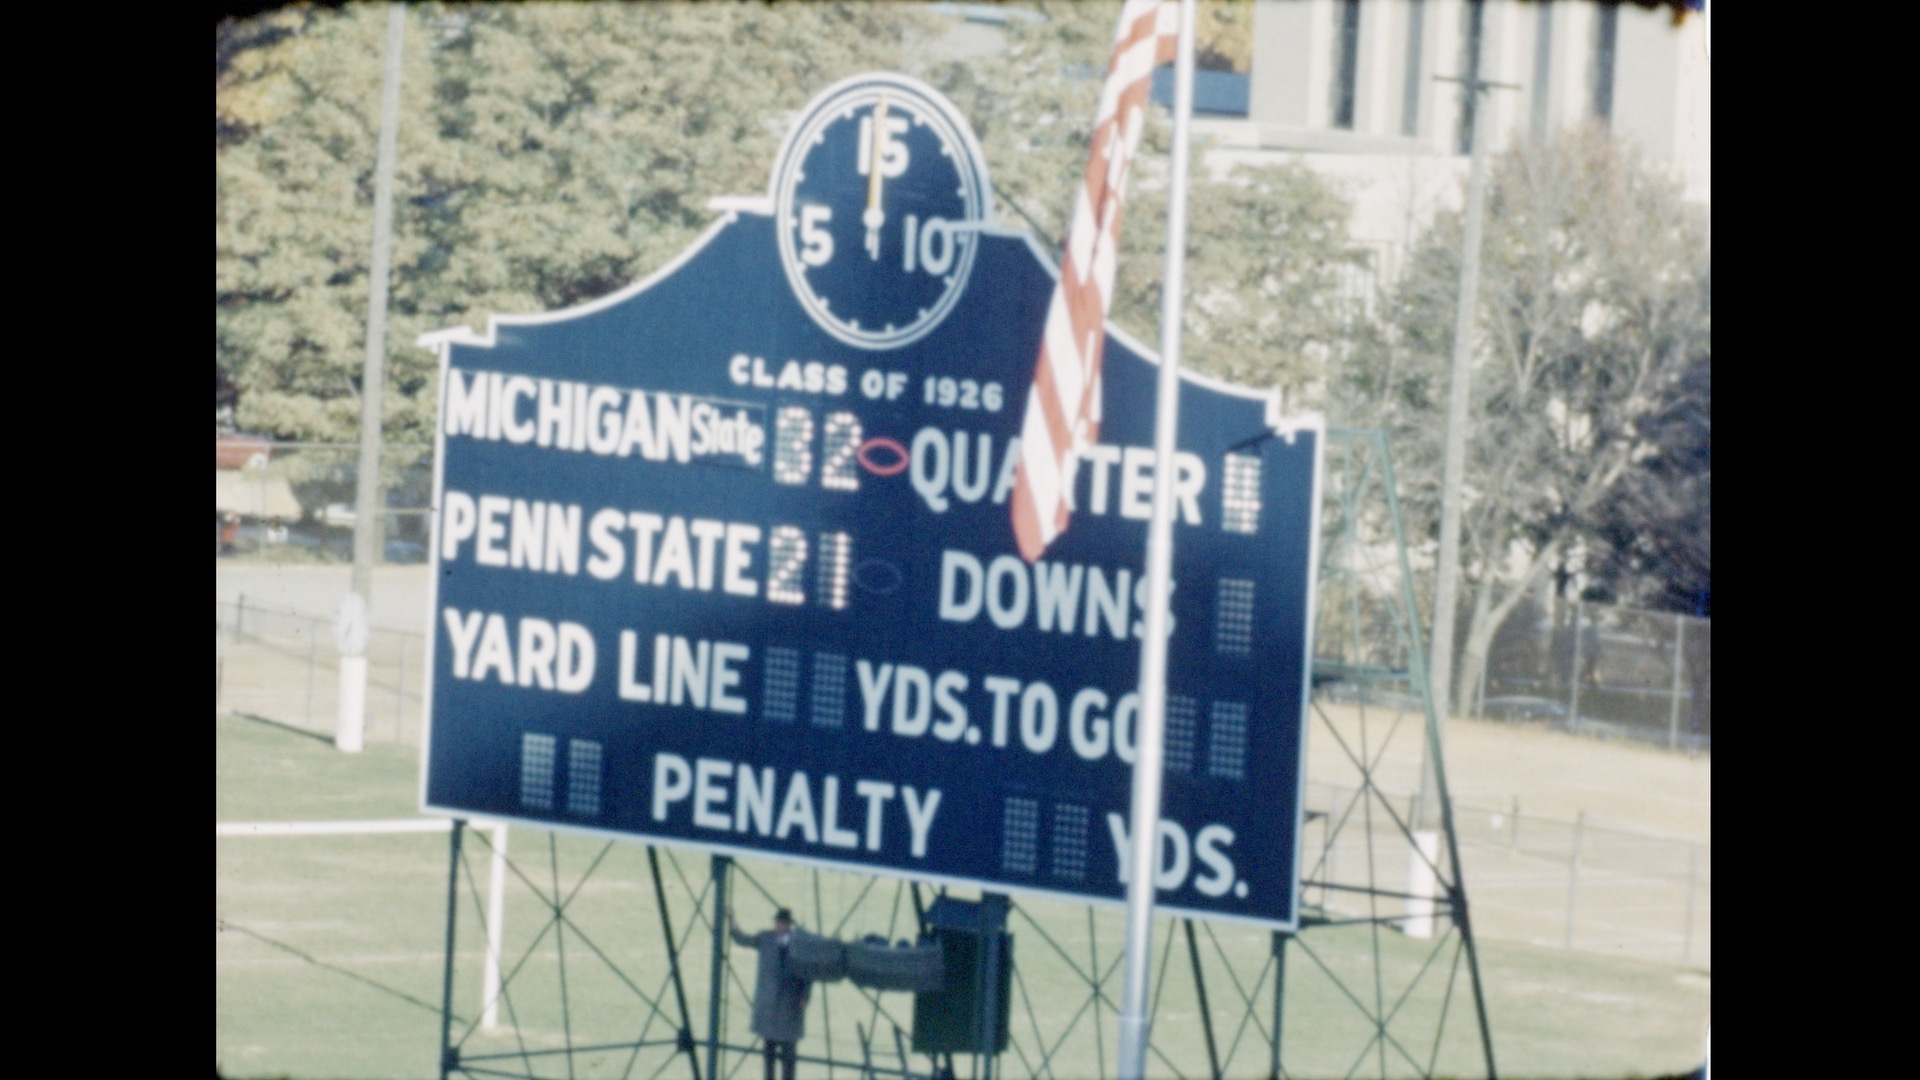 MSC Football vs. Penn State, 1951